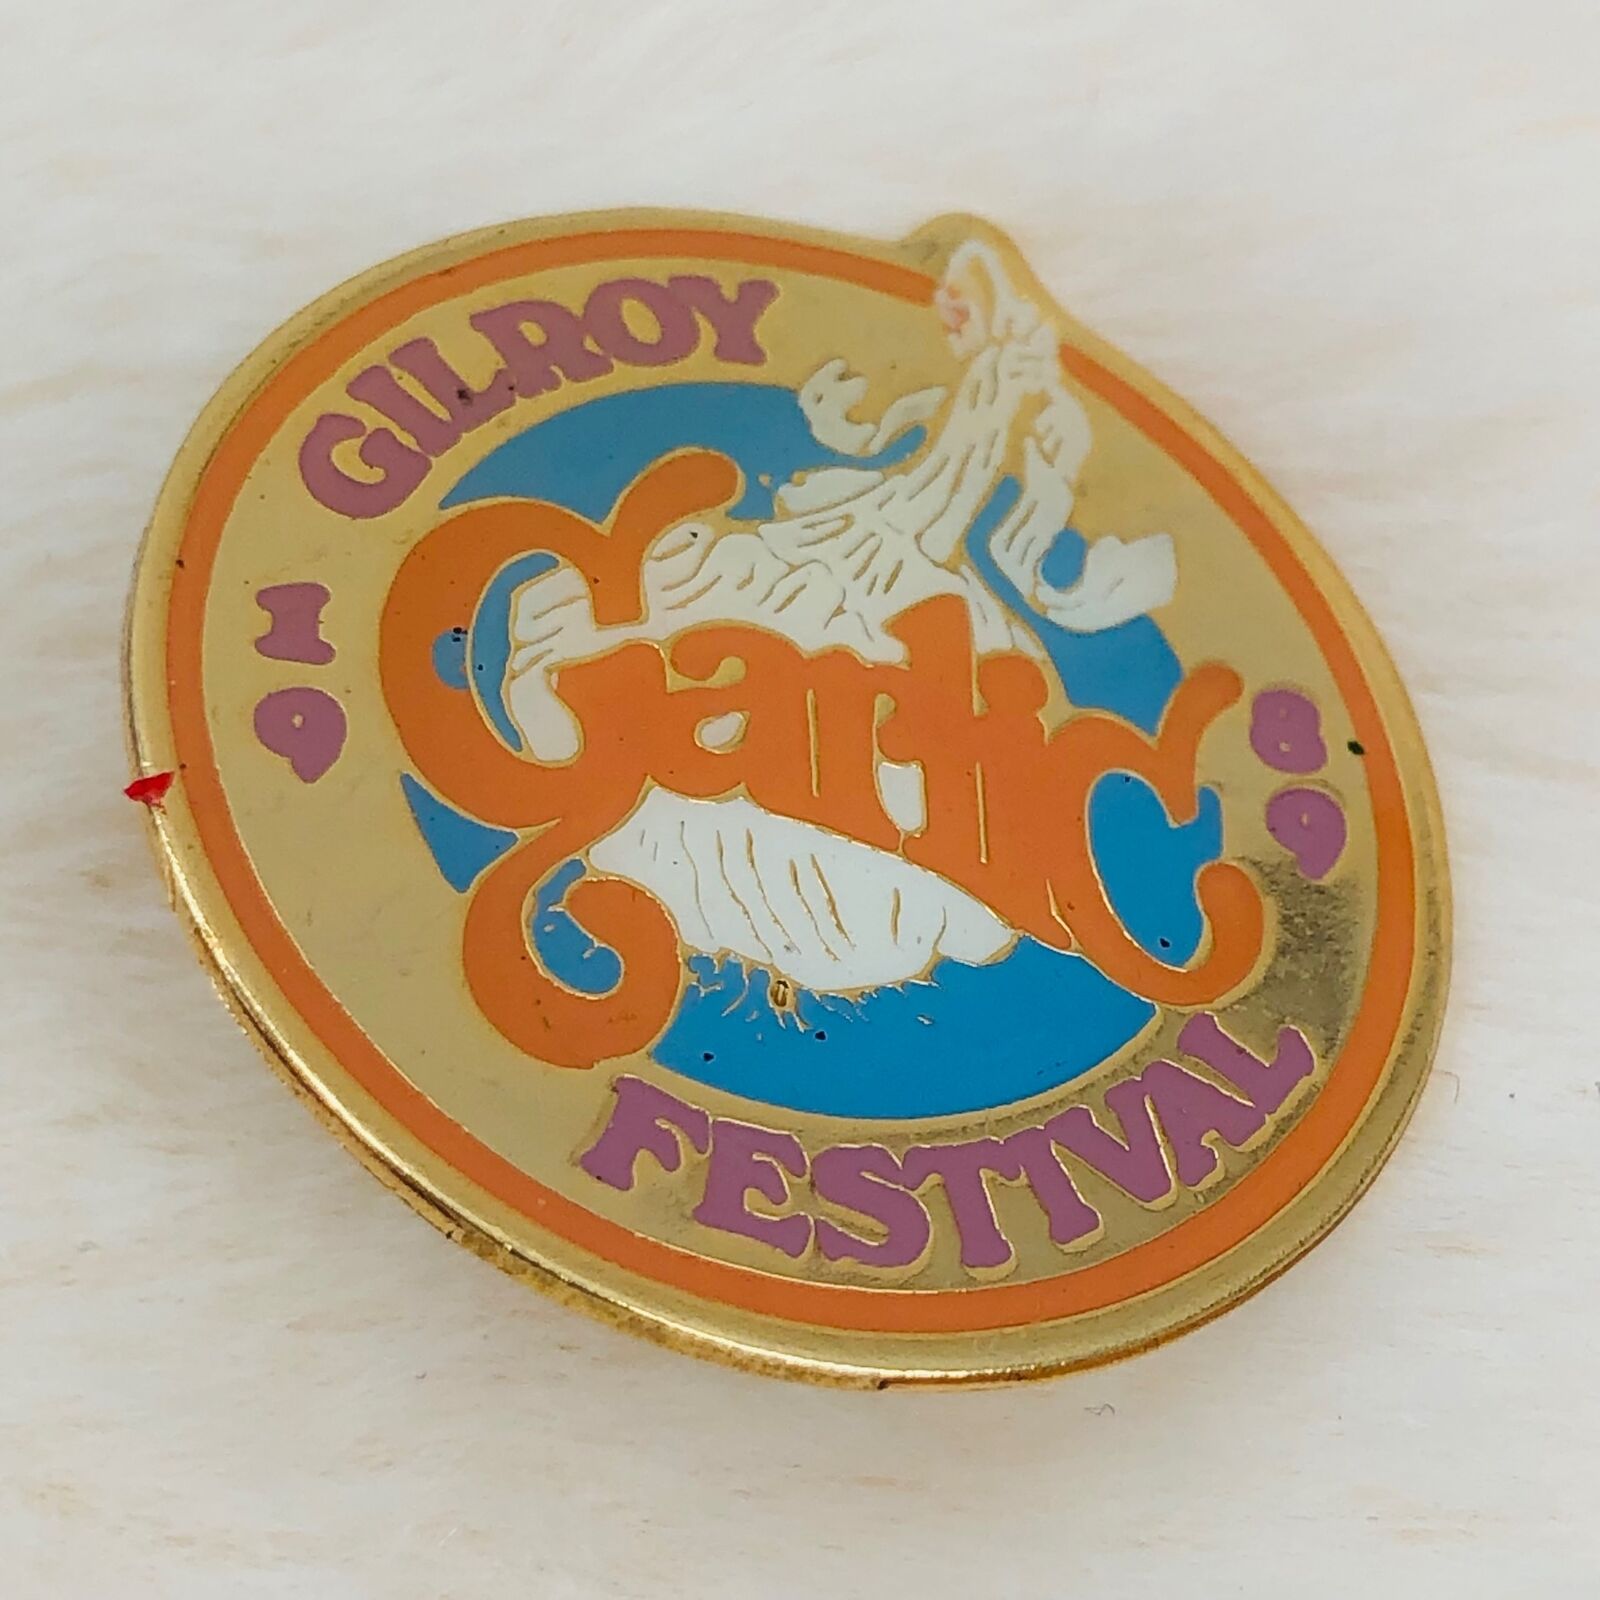 Vtg 1989 Gilroy California Garlic Festival Souvenir Enamel Lapel Pin